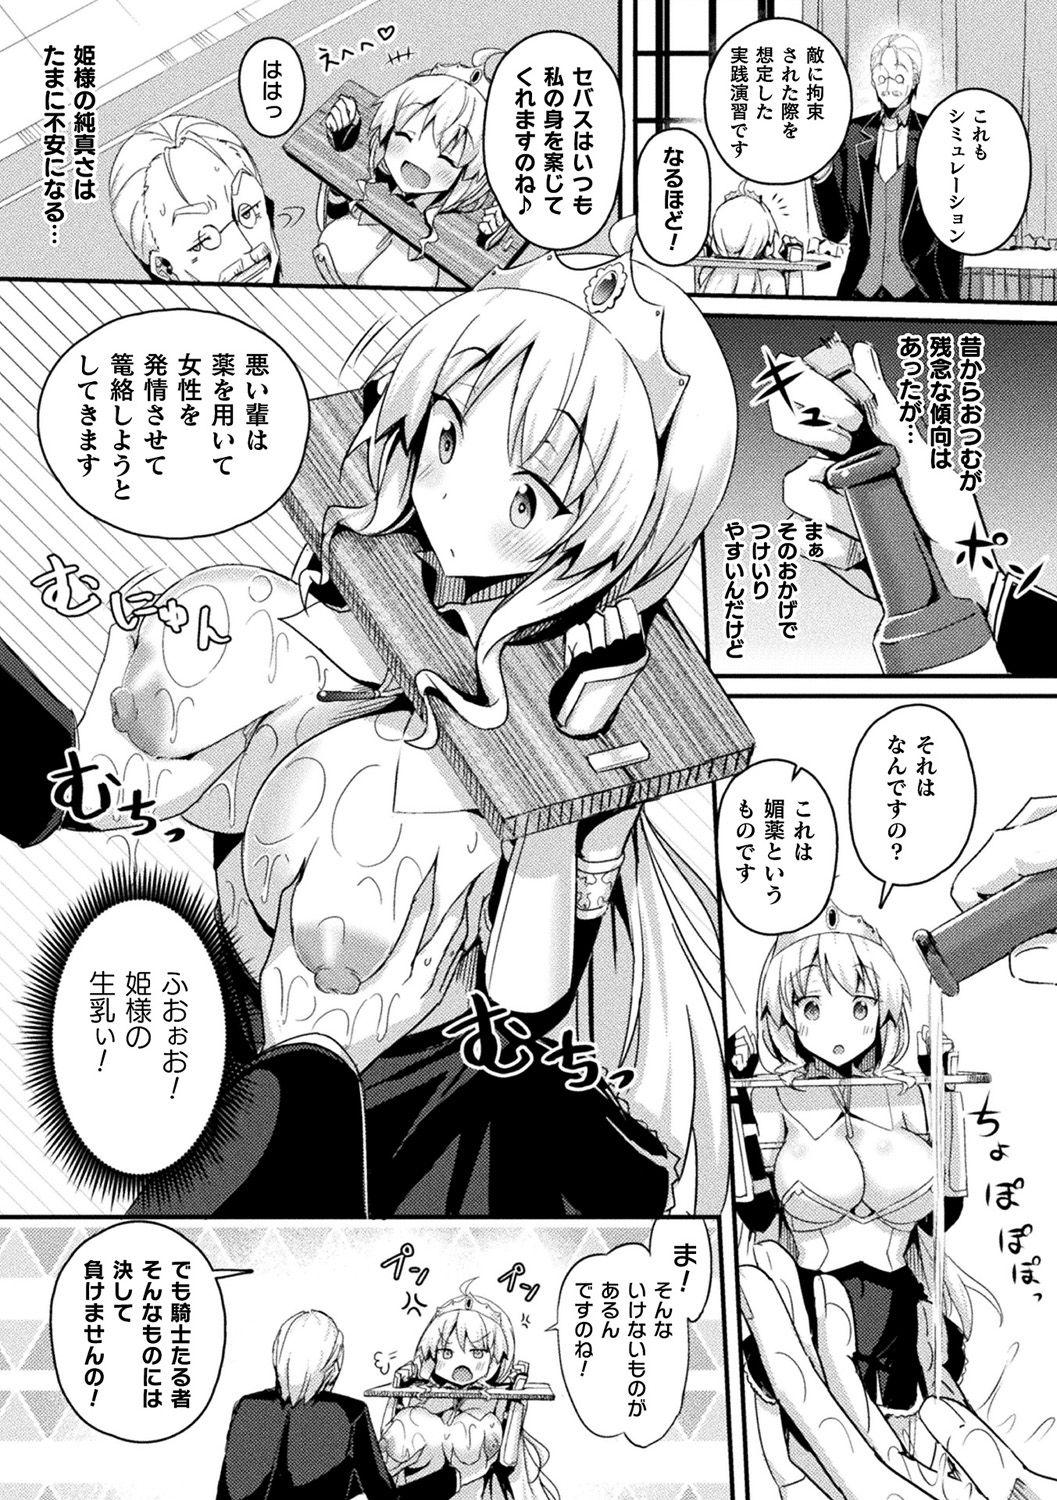 [Anthology] Bessatsu Comic Unreal Ponkotsu Fantasy Heroine H ~Doji o Funde Gyakuten Saretari Ero Trap ni Hamattari!?~ Vol. 2 [Digital] 9